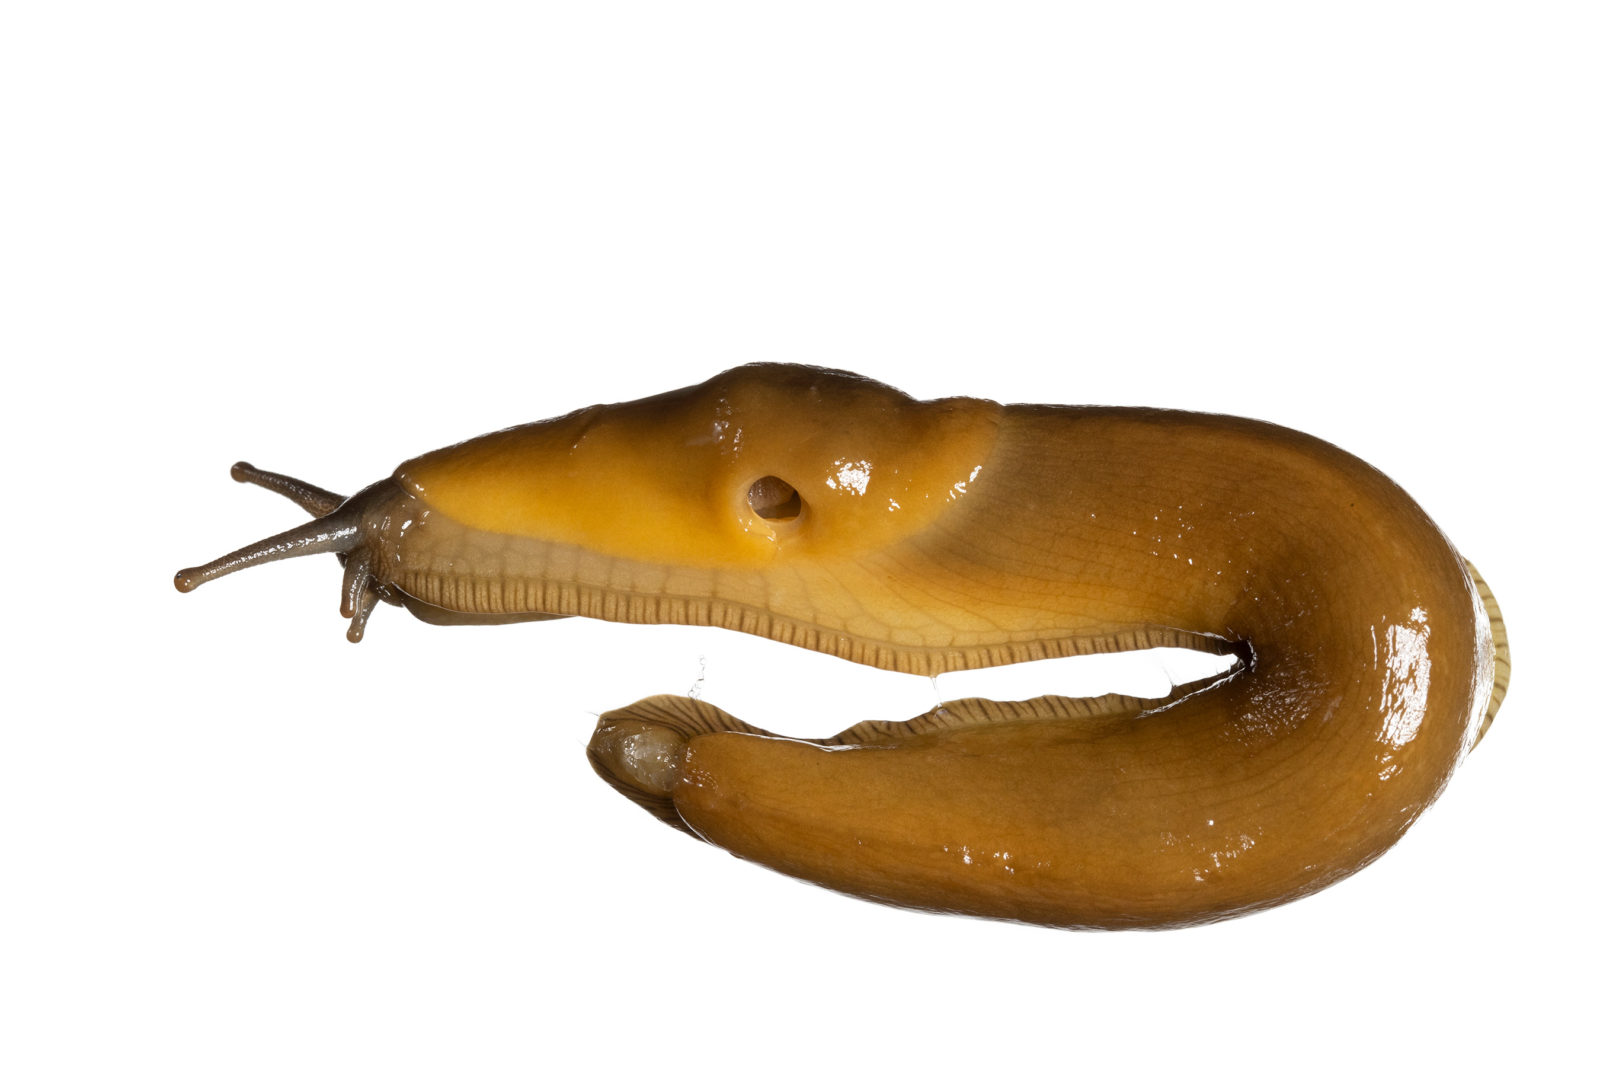 banana slug